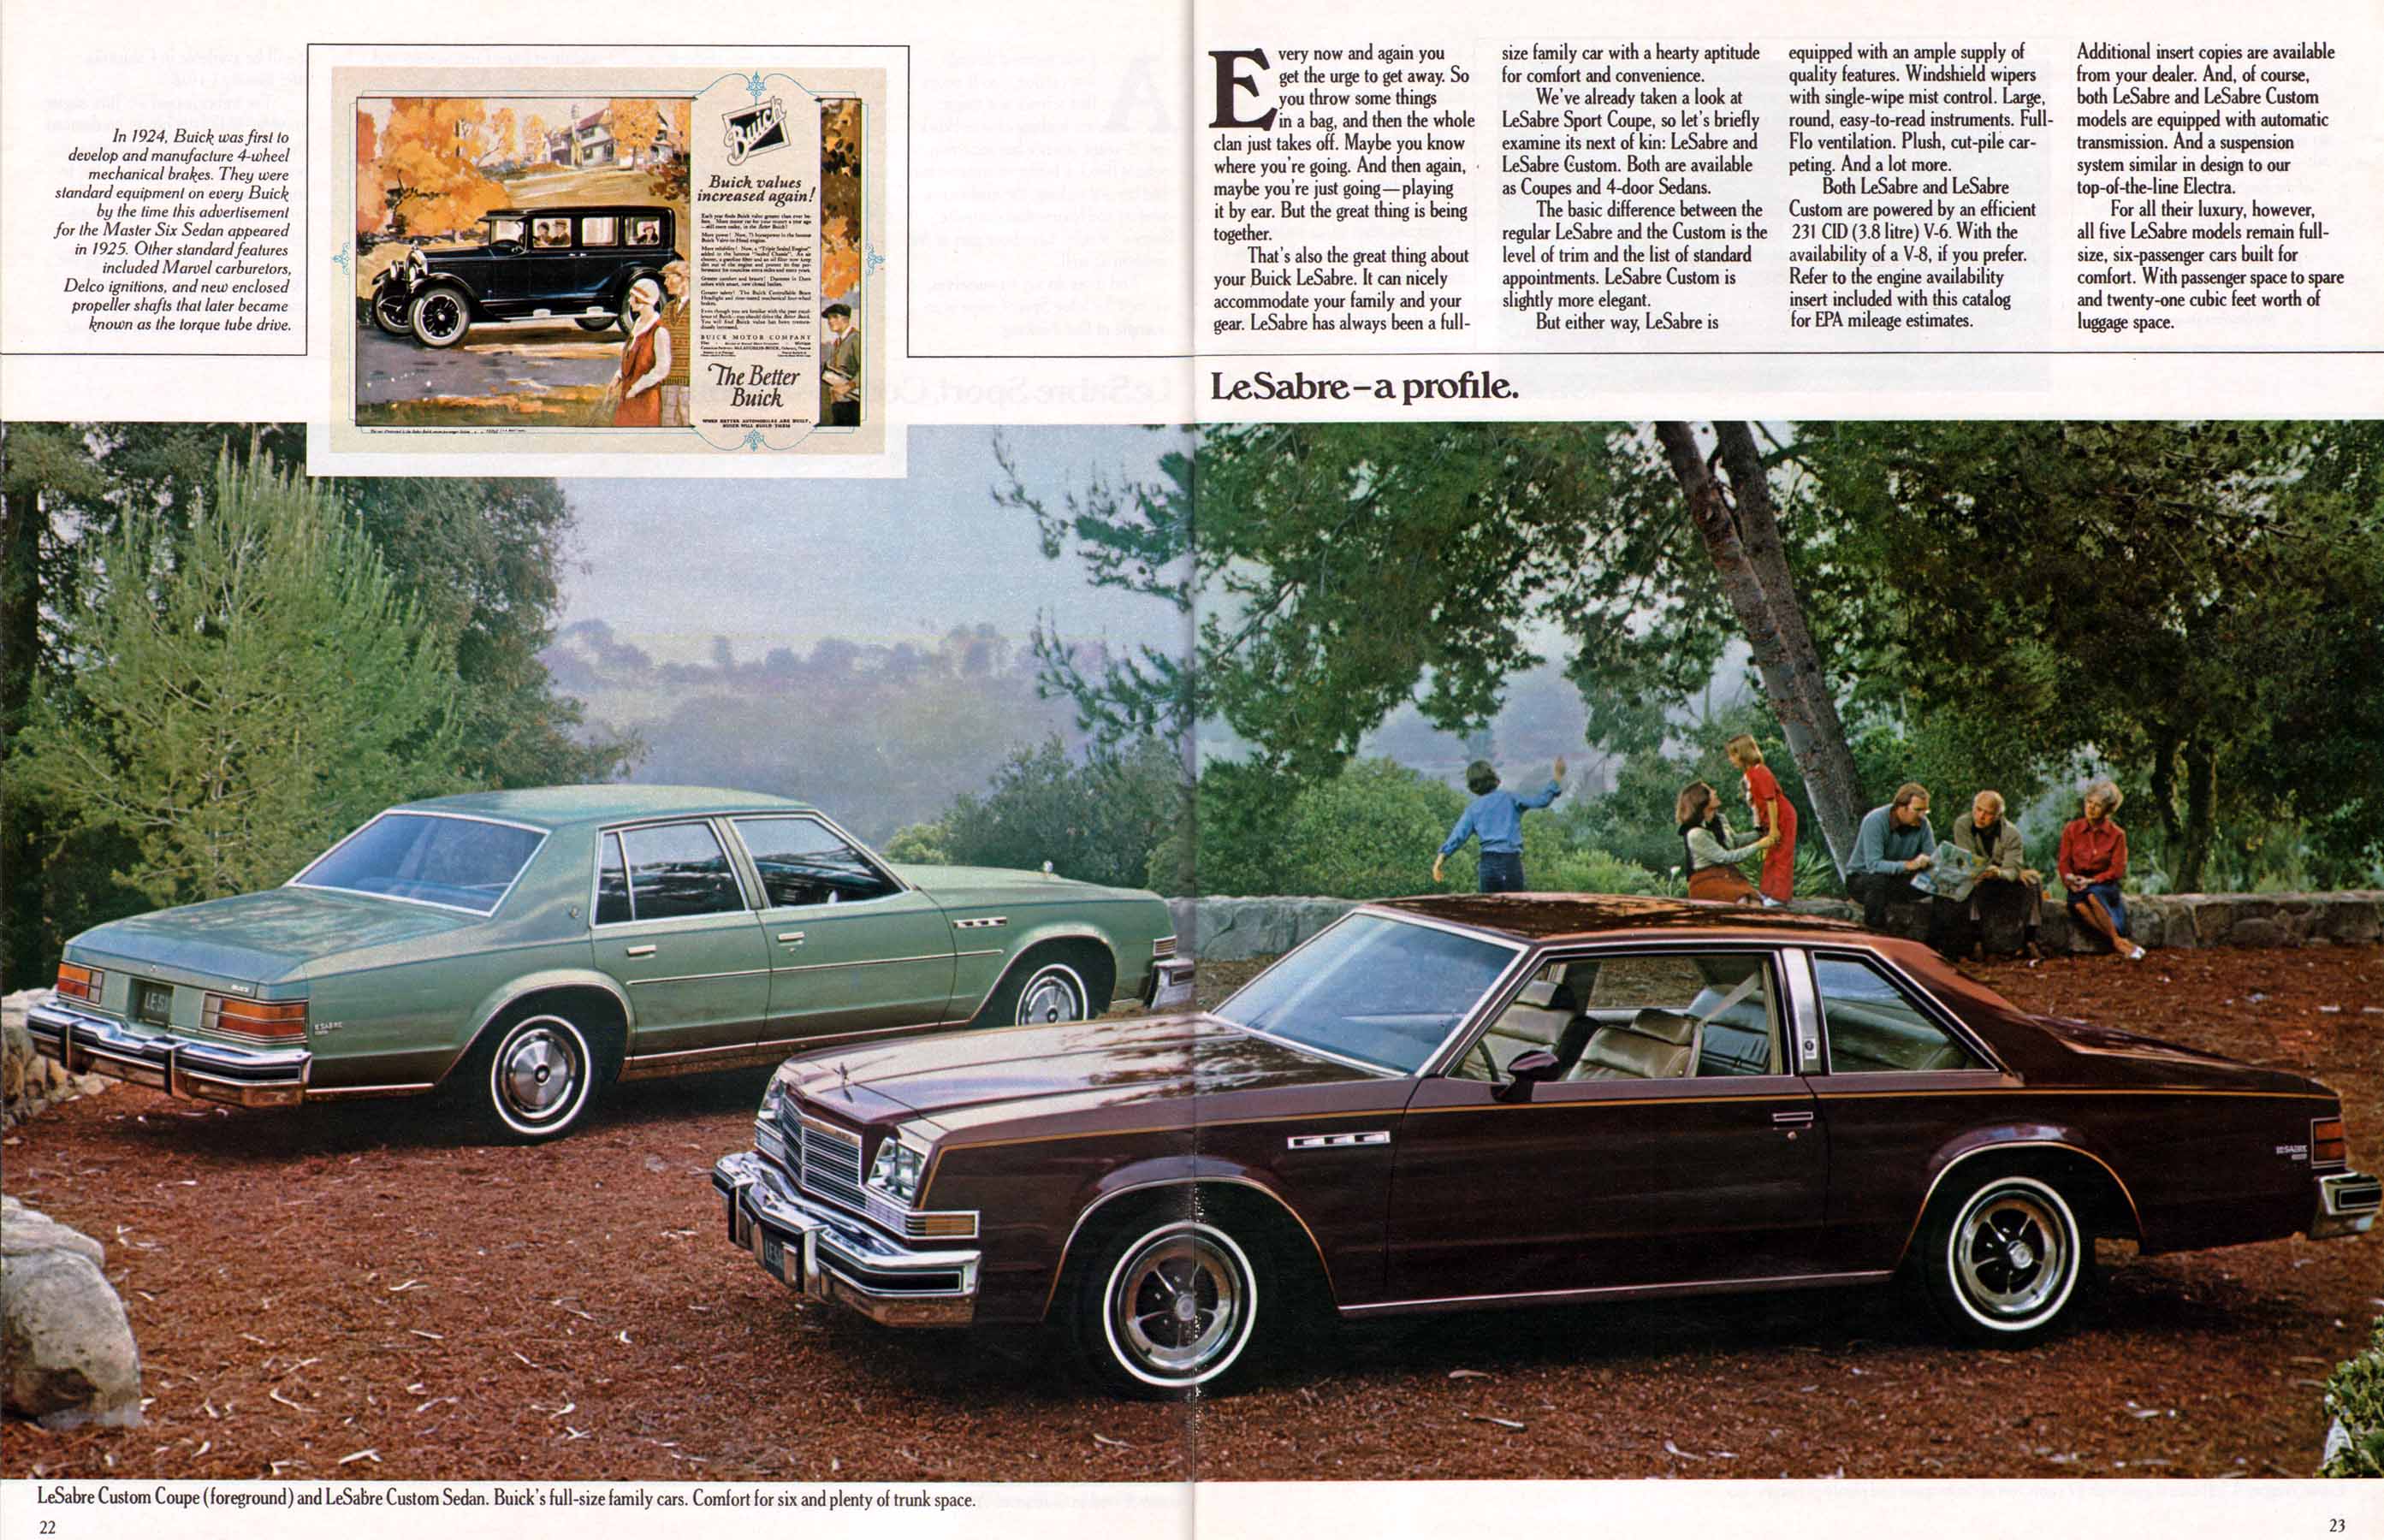 1978 Buick Full Line Prestige-22-23